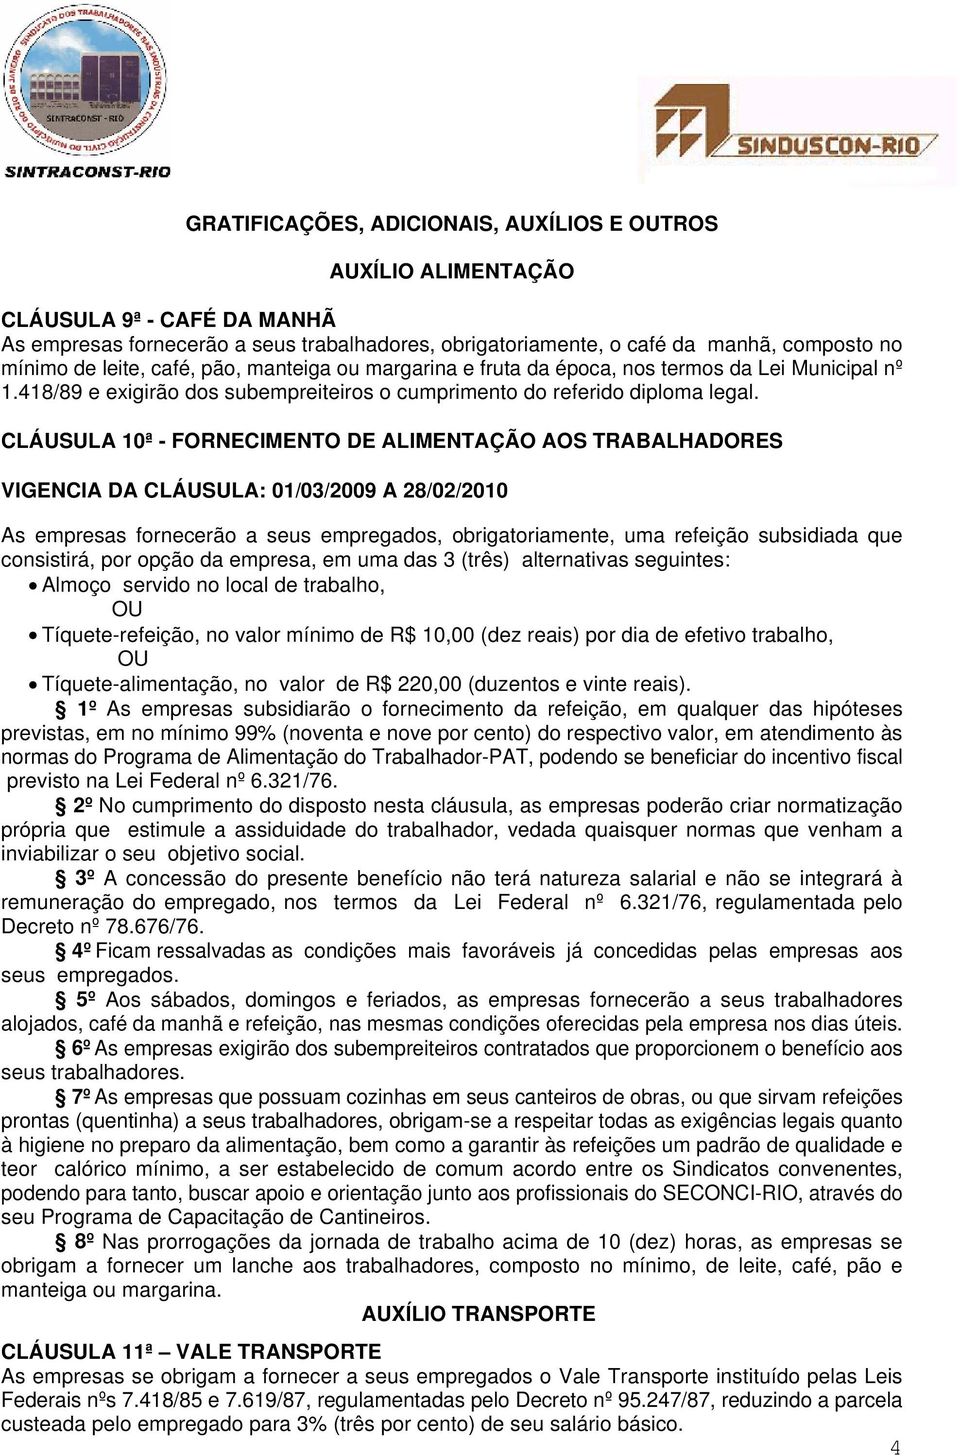 CLÁUSULA 10ª - FORNECIMENTO DE ALIMENTAÇÃO AOS TRABALHADORES VIGENCIA DA CLÁUSULA: 01/03/2009 A 28/02/2010 As empresas fornecerão a seus empregados, obrigatoriamente, uma refeição subsidiada que